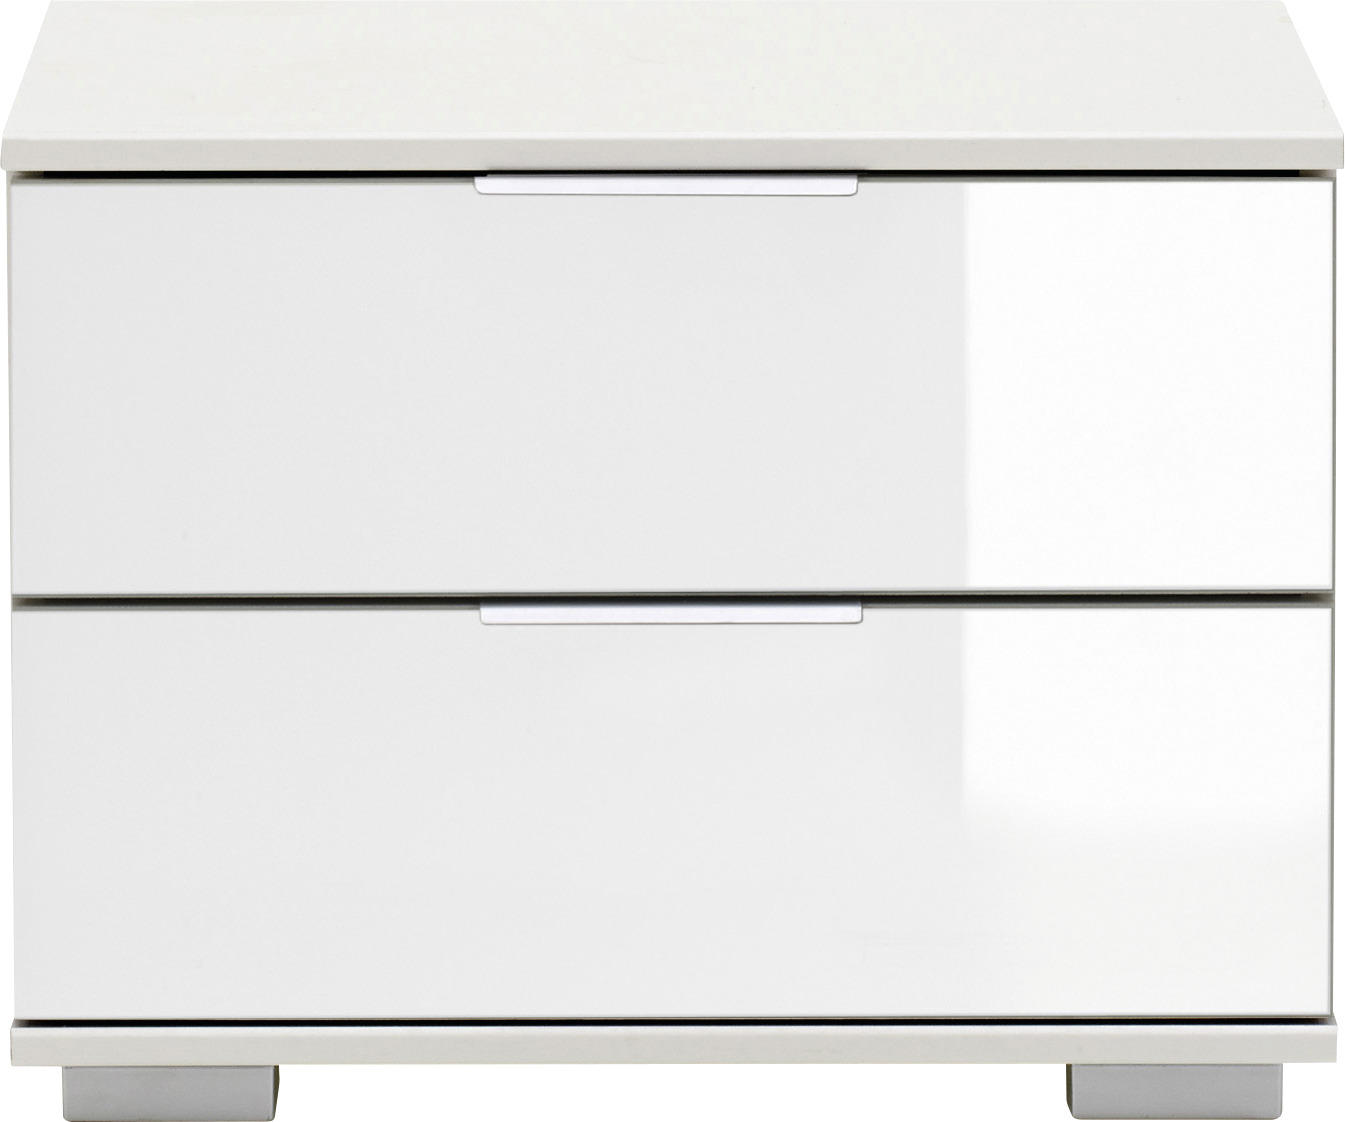 NACHTSCHRANK Weiß  - Chromfarben/Alufarben, Design, Glas/Kunststoff (52/40/38cm) - Livetastic